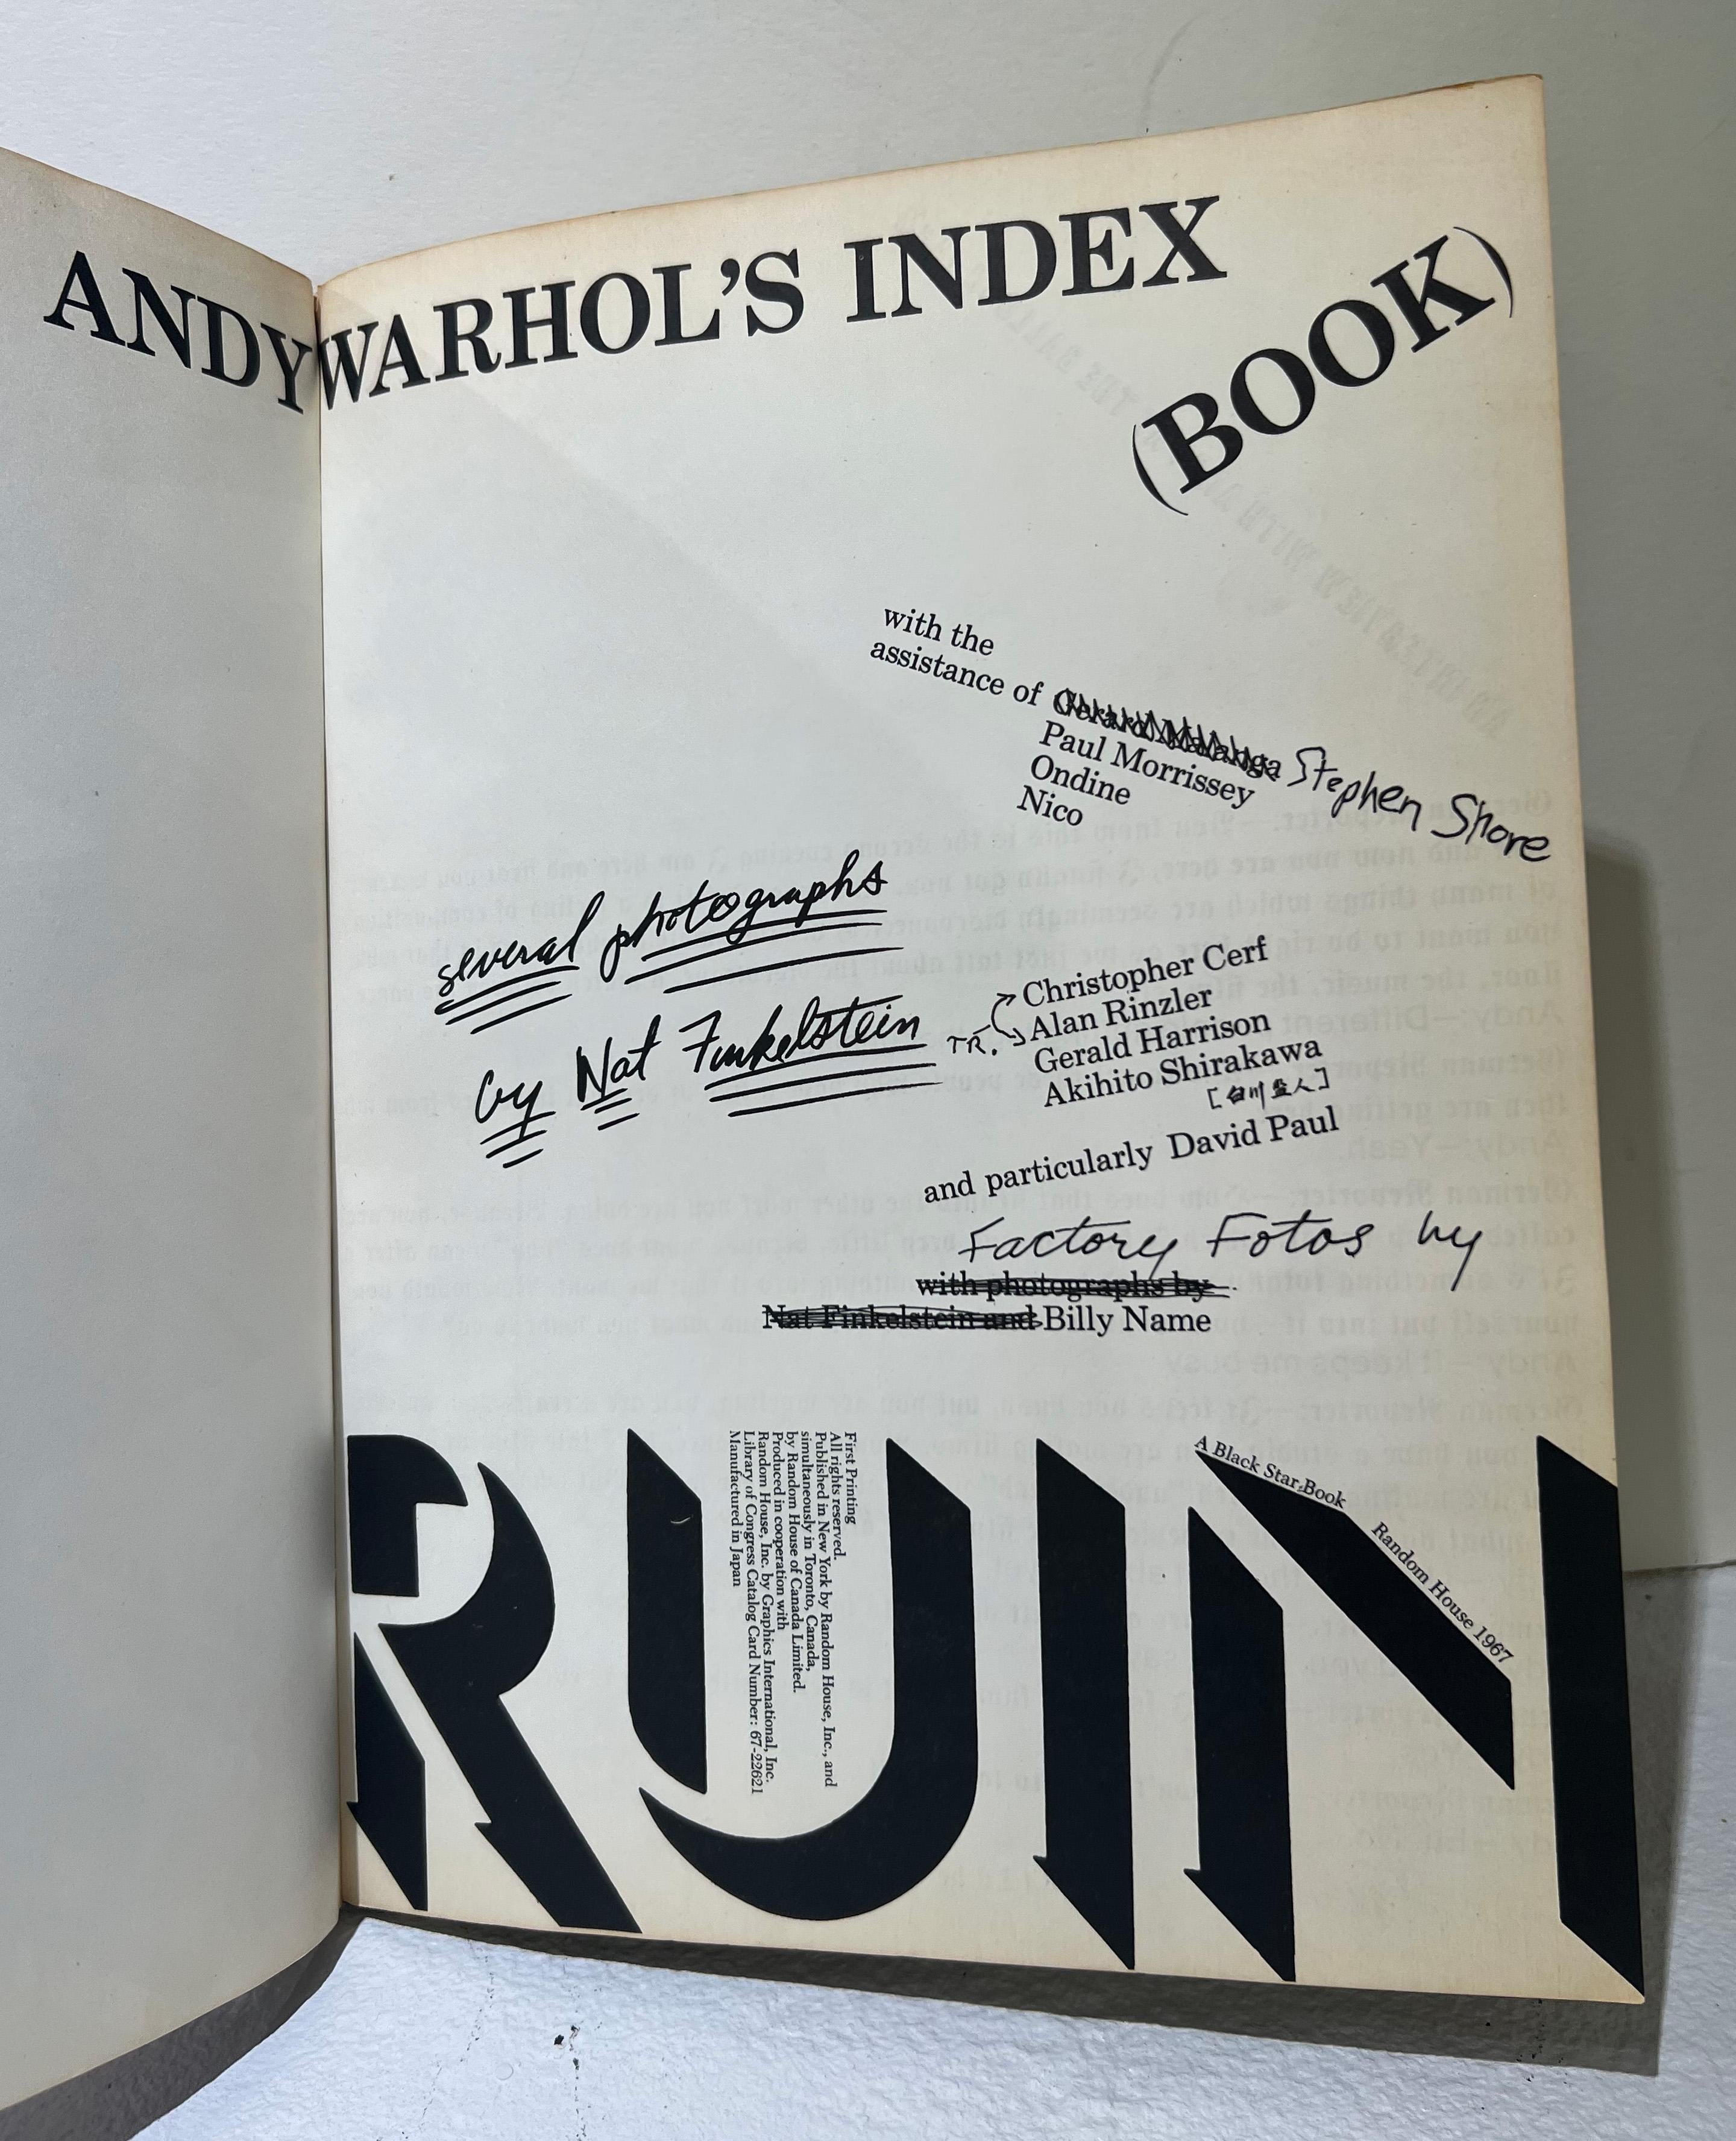 Ein gedrucktes Originalexemplar von Andy Warhols Brillo-Buch.

11,25